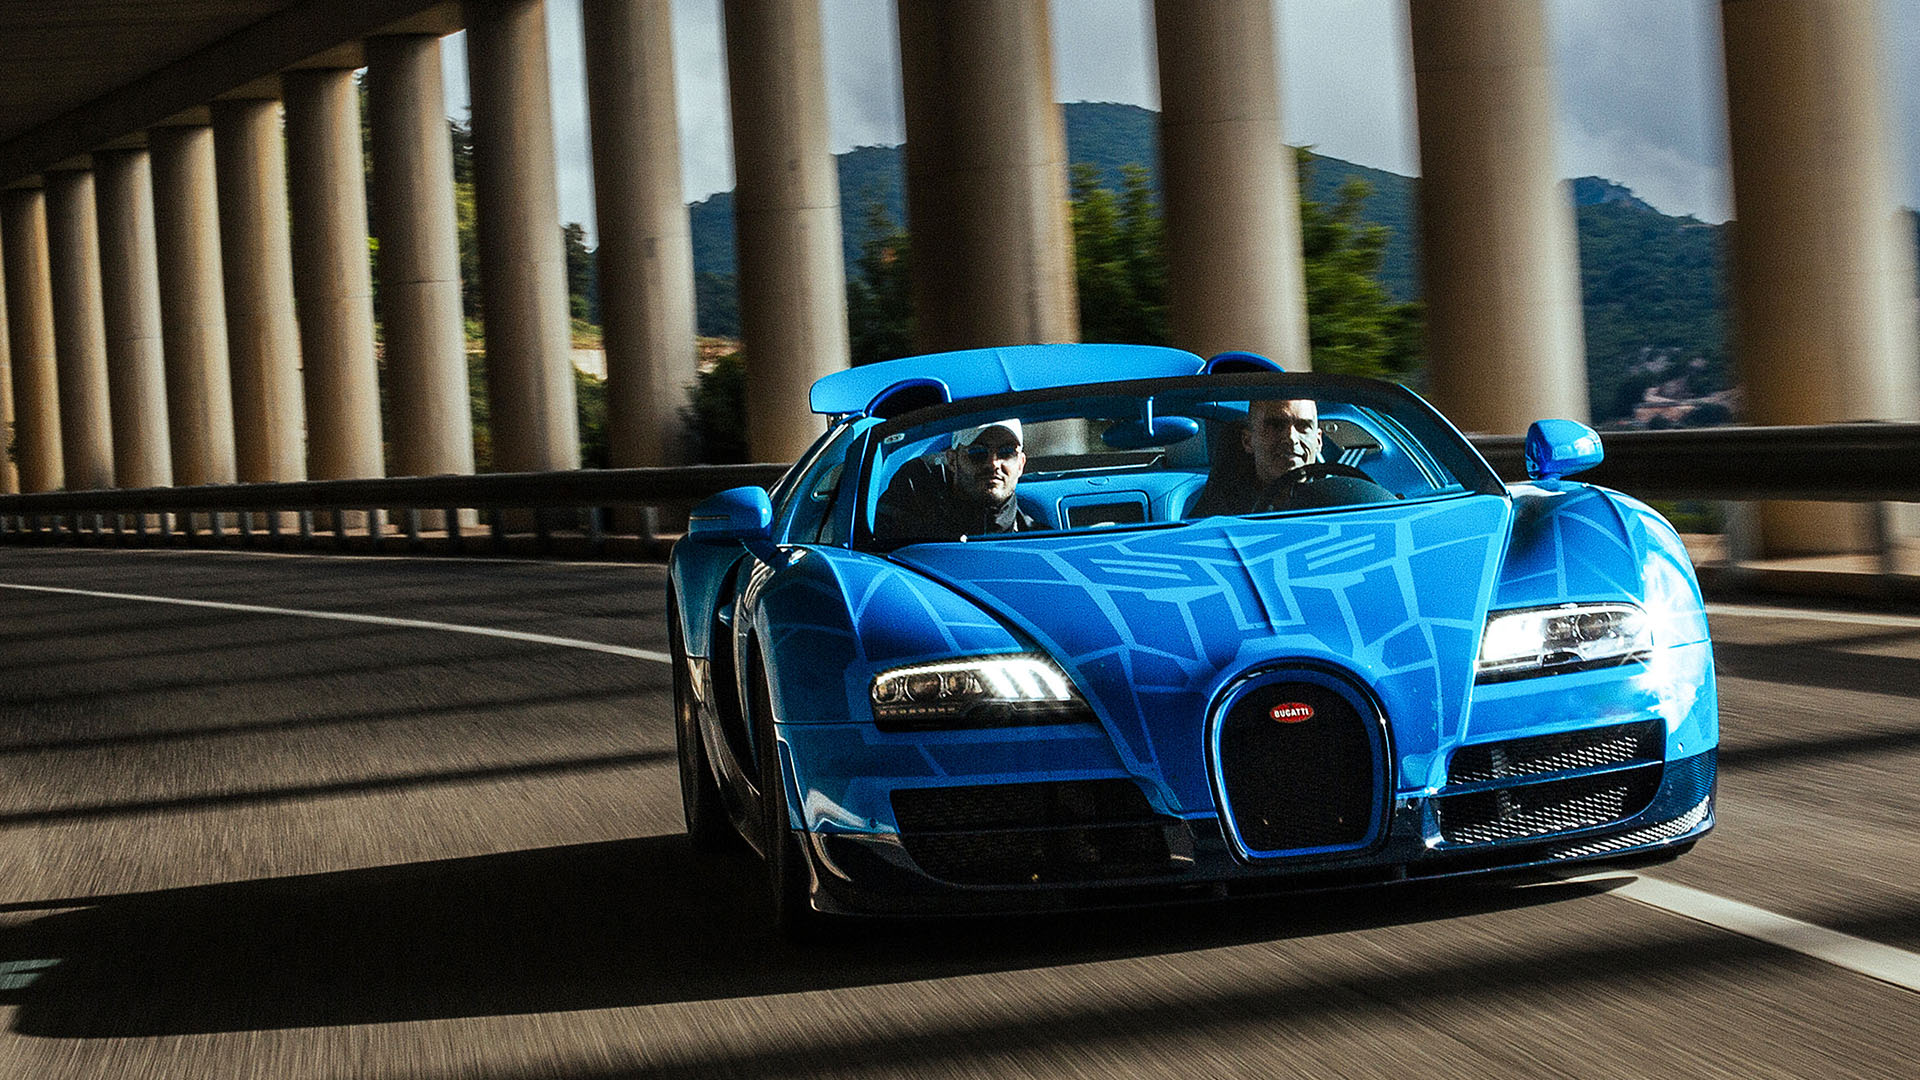 Bugatti Grand Tour Sardinia explores